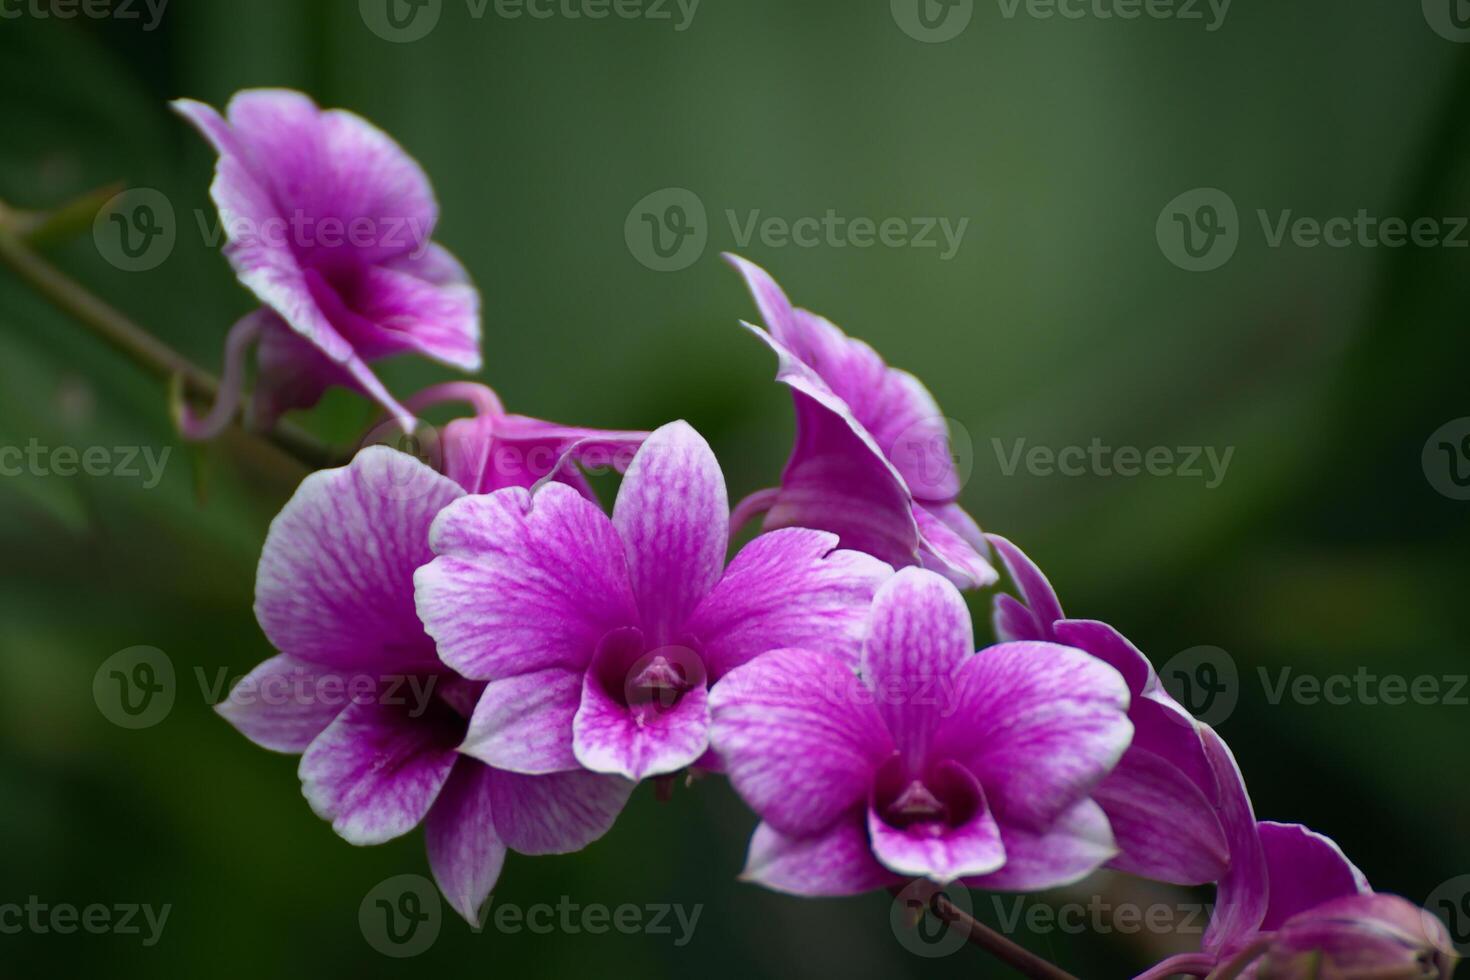 une magnifique grand bouquet de violet Vanda famille orchidées dans le jardin ou cultiver. photo